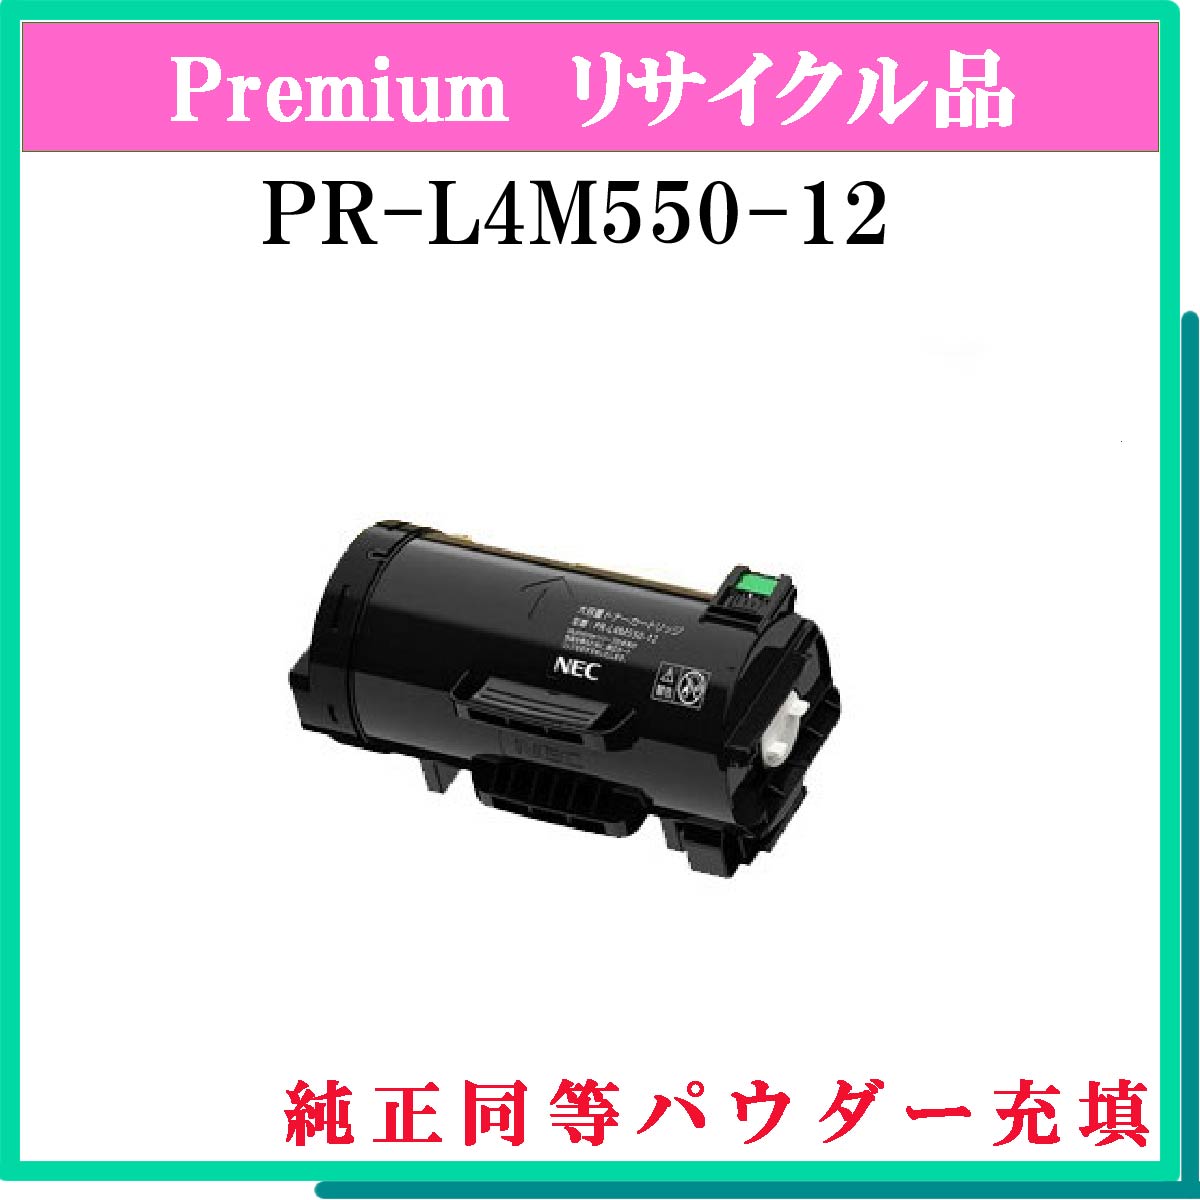 PR-L4M550-12 (純正同等ﾊﾟｳﾀﾞｰ)